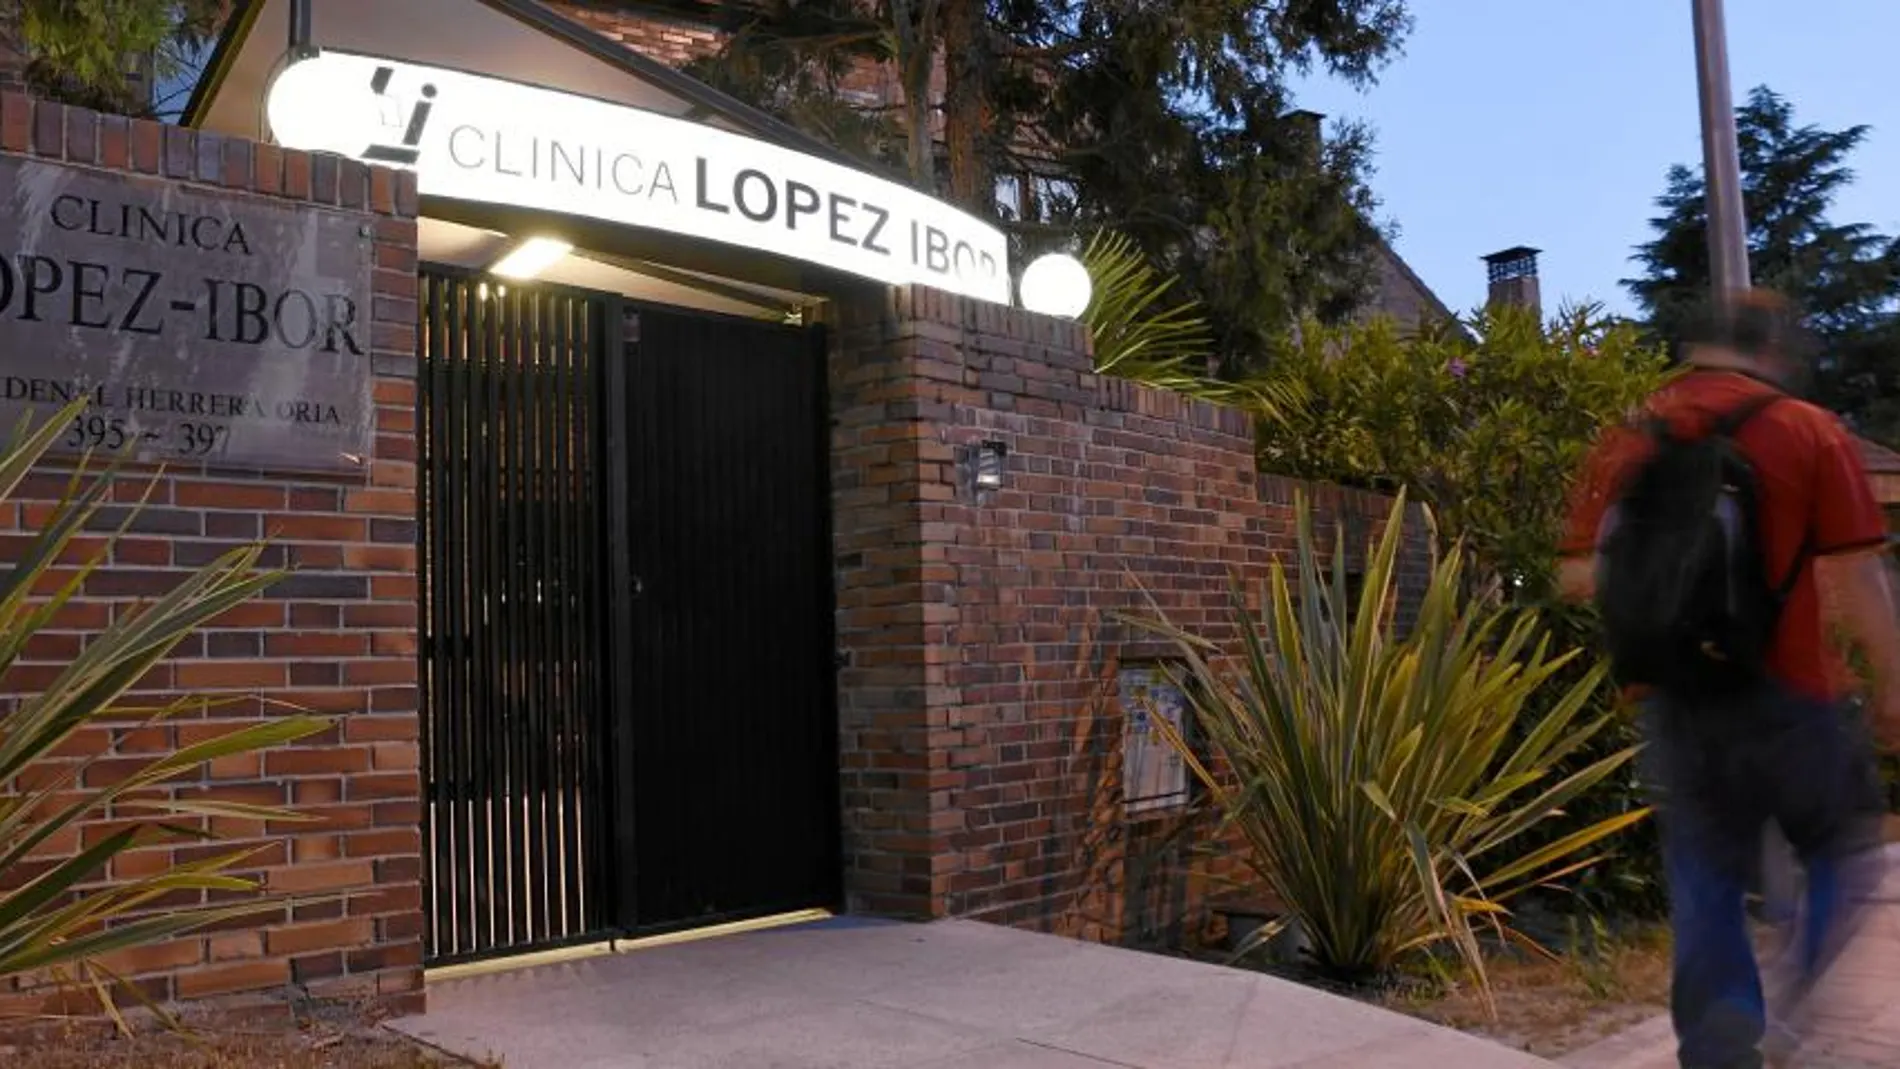 Los hechos ocurrieron en el interior de la clínica López Ibor, en Herrera Oria